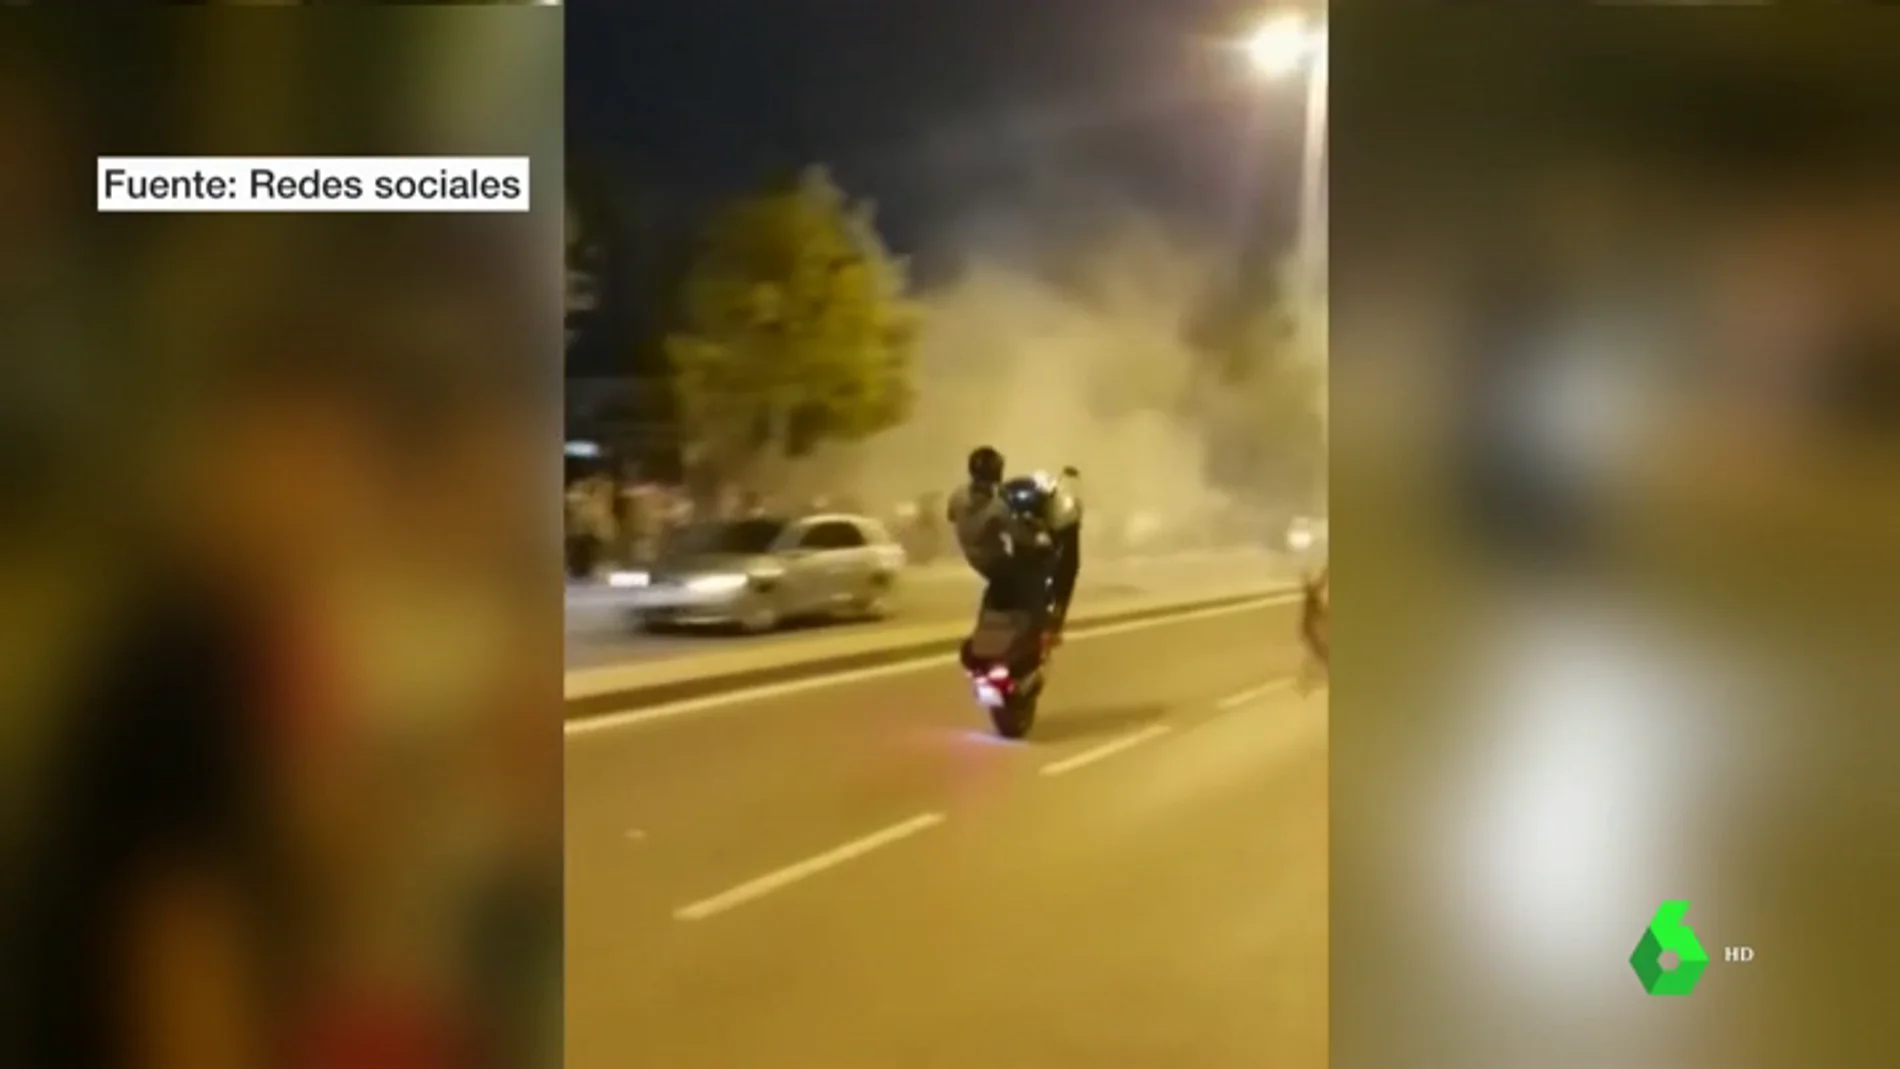 Las carreras ilegales de motos protagonizan las calles de Jerez días antes del Campeonato de Moto GP